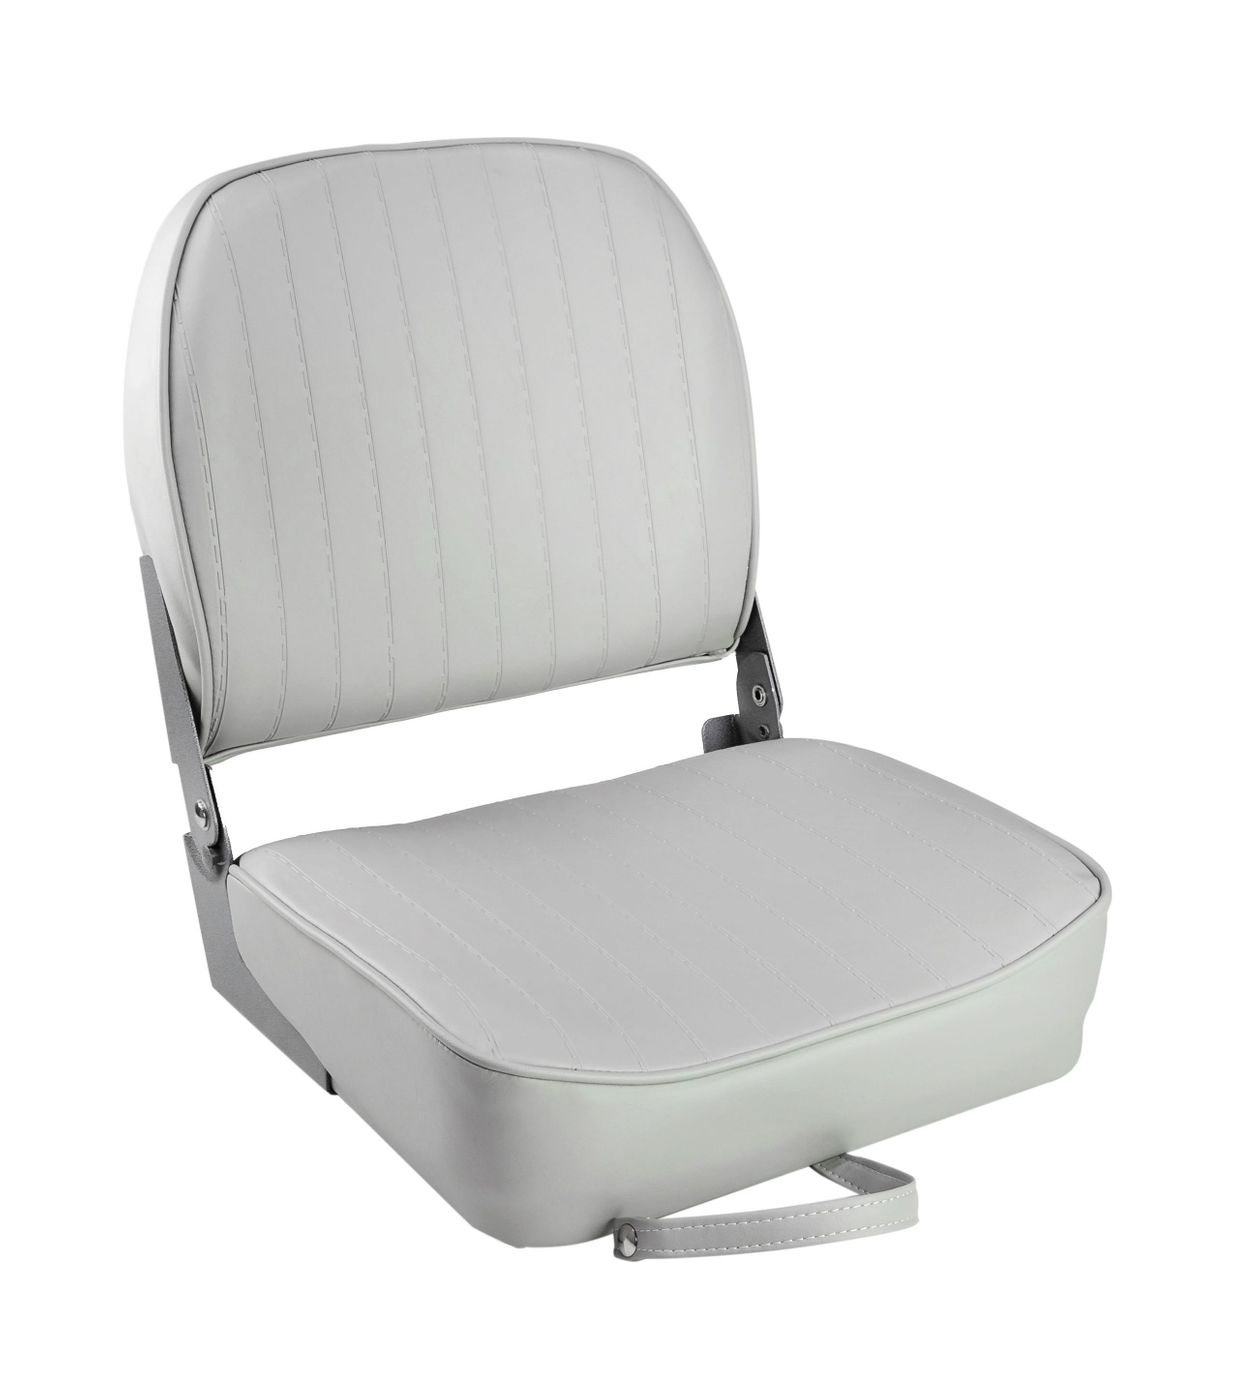 Кресло складное мягкое ECONOMY с низкой спинкой, цвет серый 1040623 кресло складное мягкое economy с высокой спинкой белое 1040649